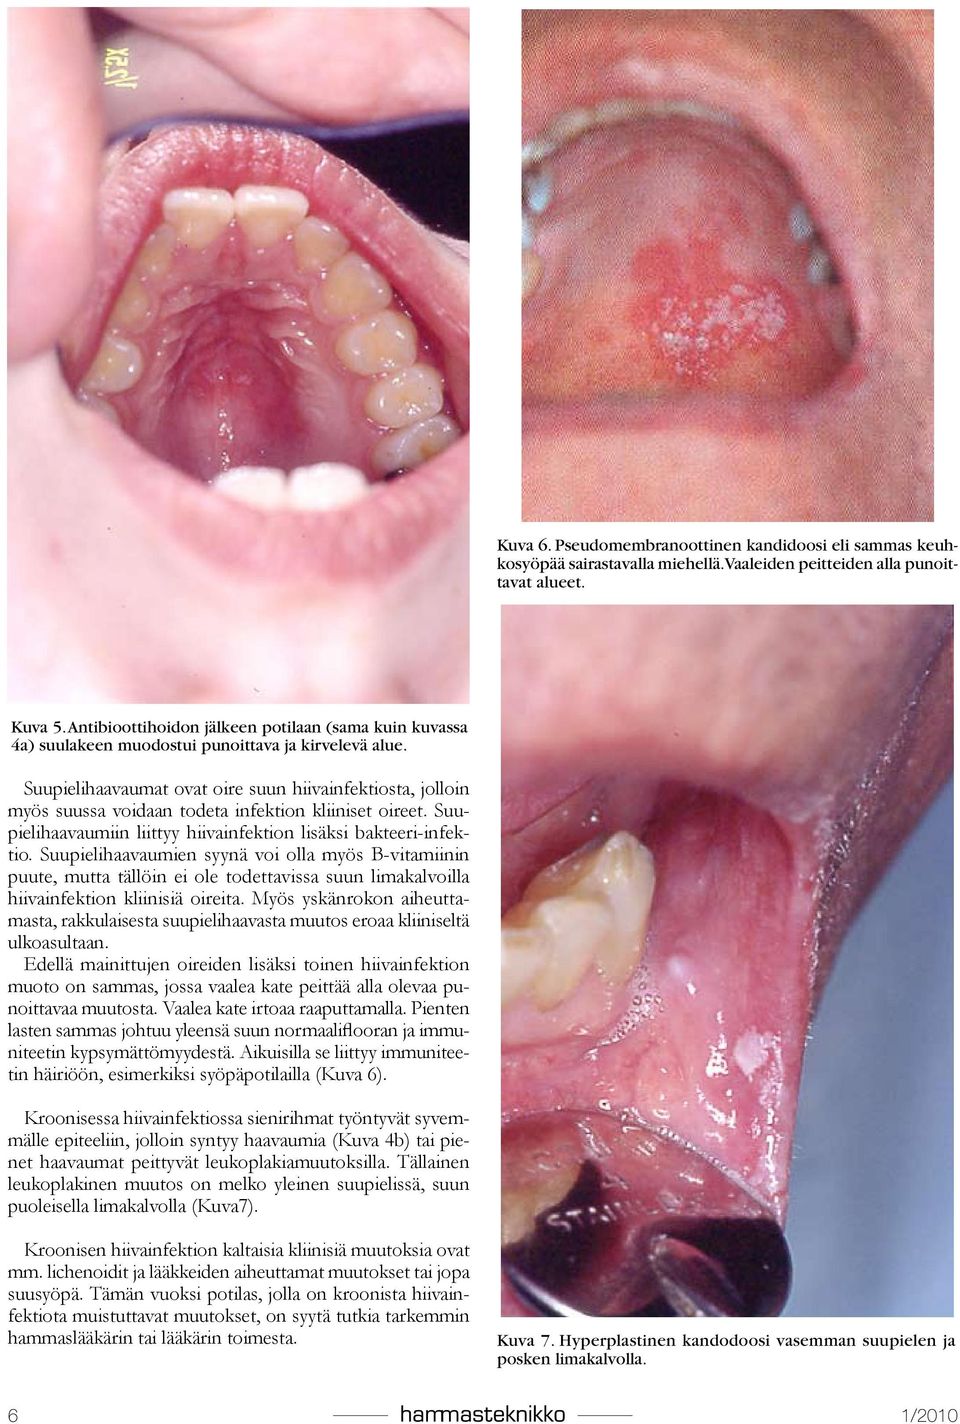 Suupielihaavaumat ovat oire suun hiivainfektiosta, jolloin myös suussa voidaan todeta infektion kliiniset oireet. Suupielihaavaumiin liittyy hiivainfektion lisäksi bakteeri-infektio.